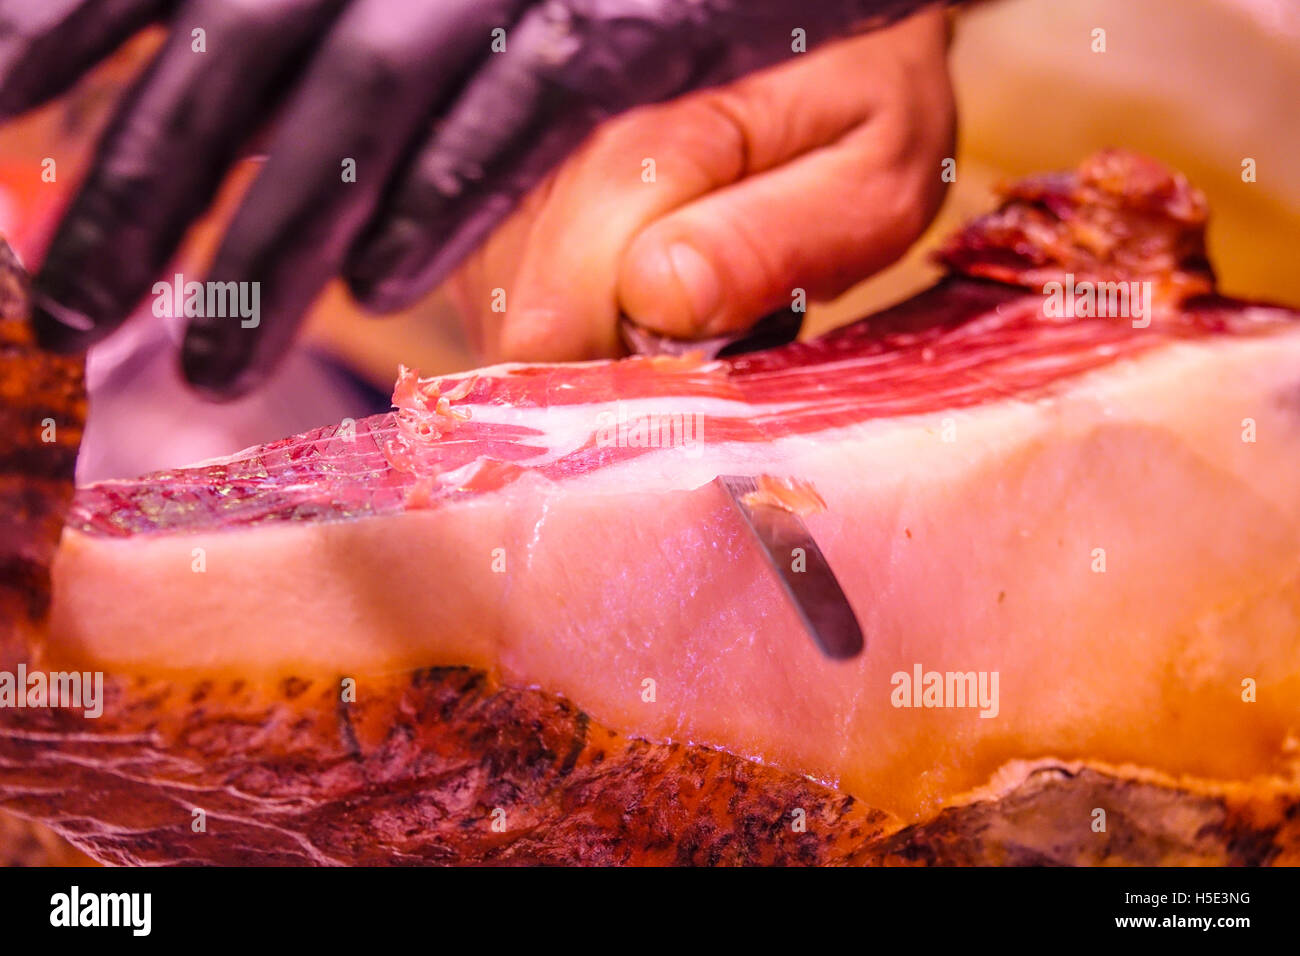 Slicing spanischen Schinken - Spezialität aus Spanien - jambon Iberico Stockfoto